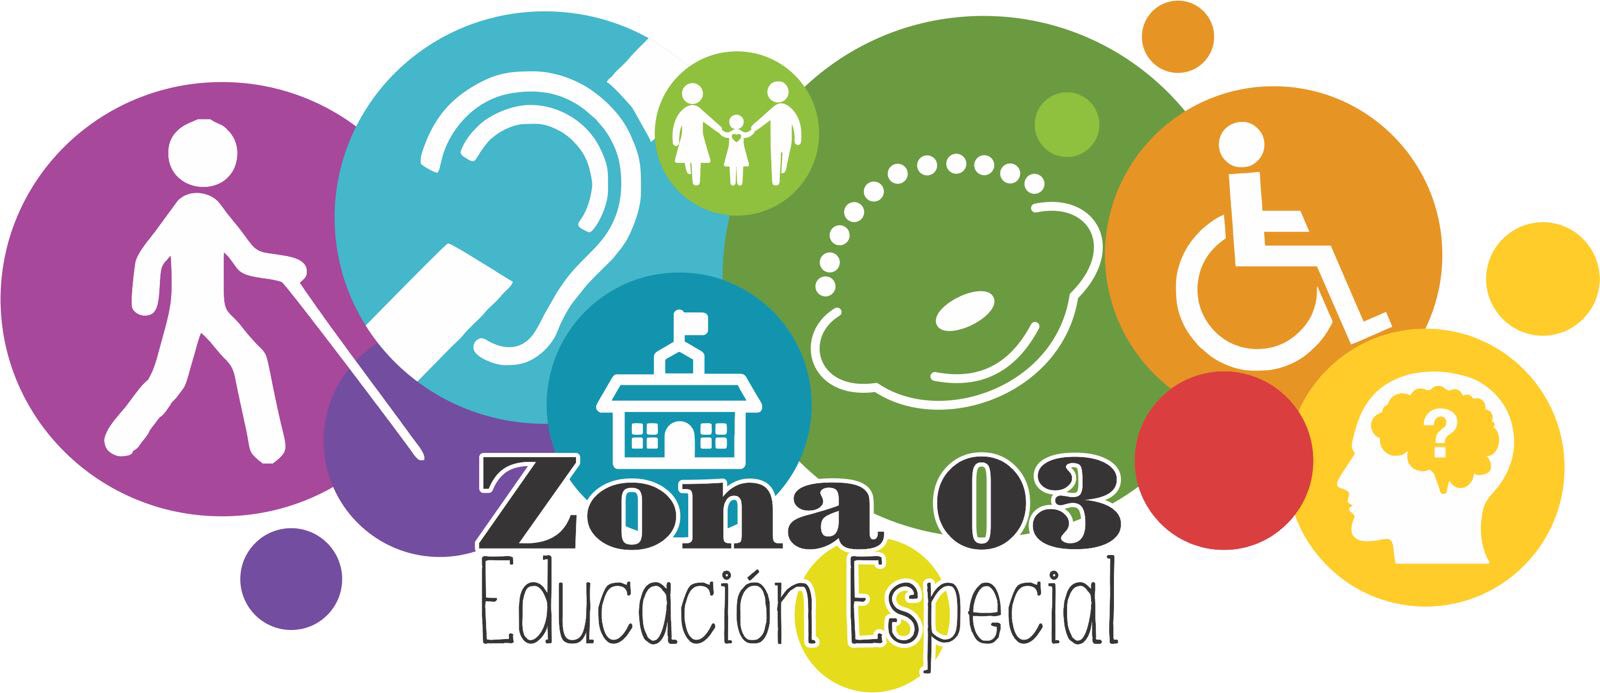 ATP zona 03 Educación Especial